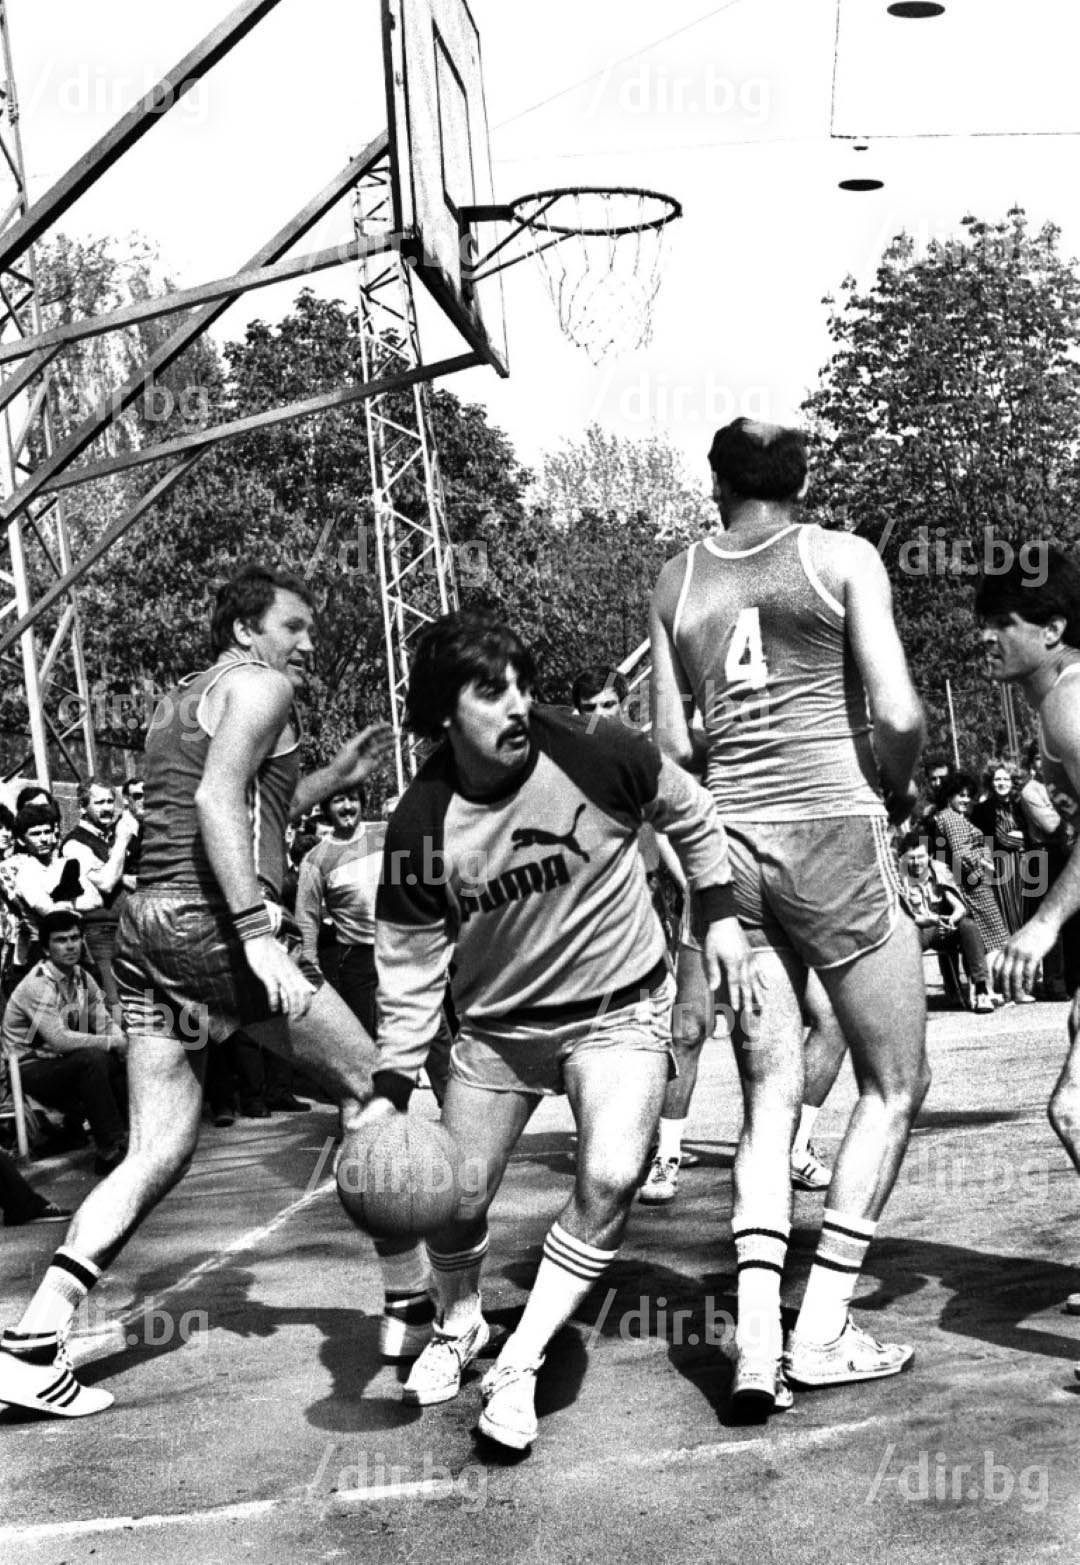 Петко Маринов в баскетболен дуел с Атанас Голомеев в шоу в парка "Заимов" в София.